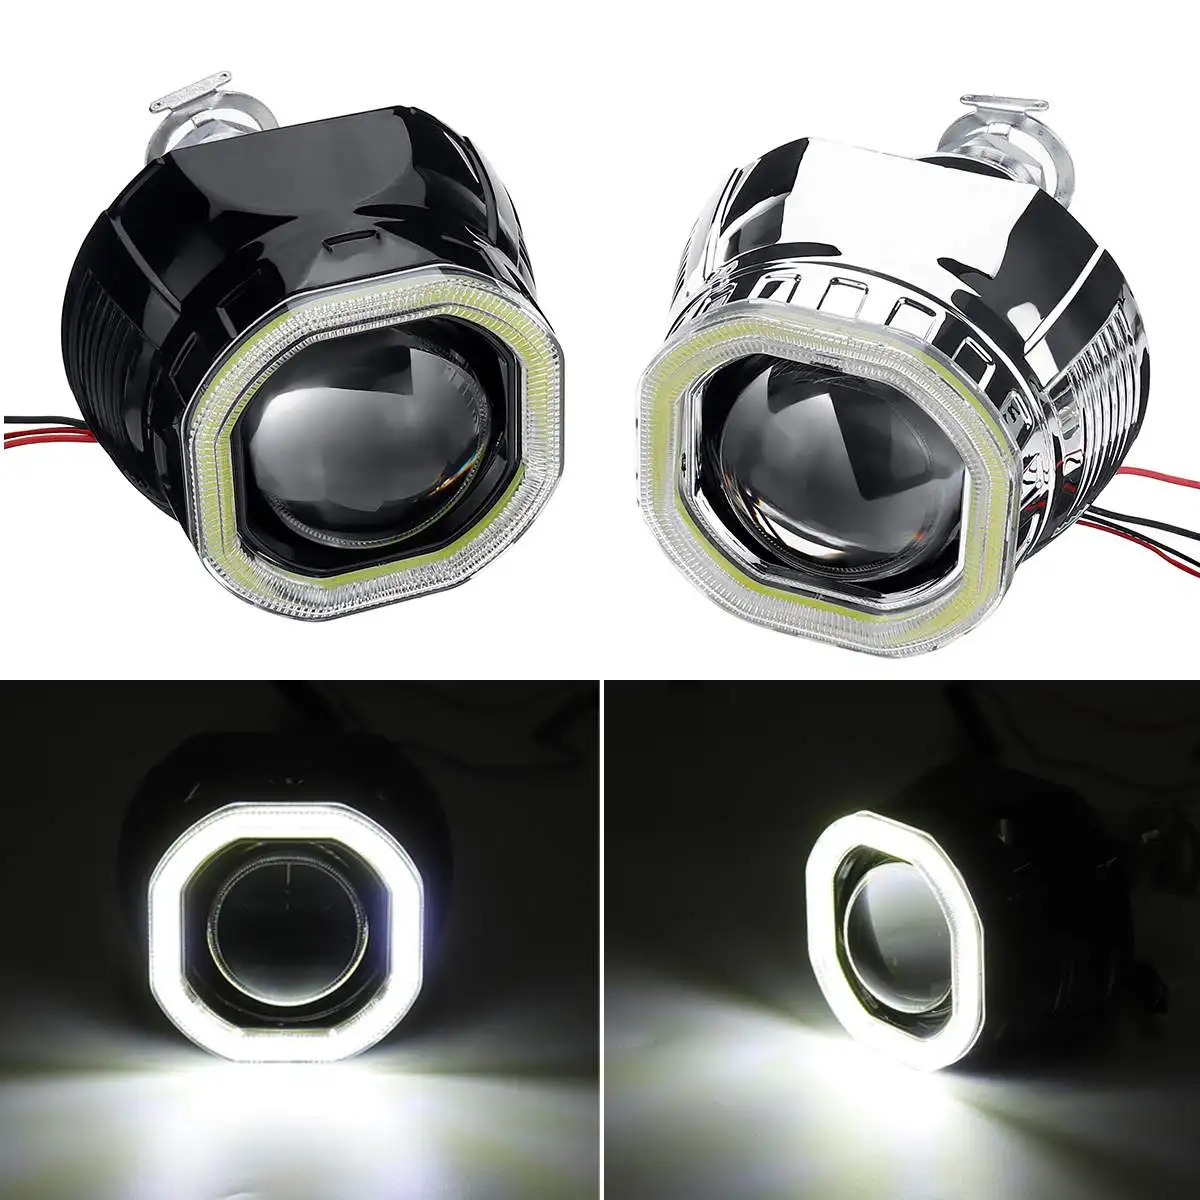 Мини линза h7 купить. Bi-Xenon Projector Lens Headlight. Bixenon линзы 2,5 дюйма квадратные "Clear Light". Биксеноновая линза н1 с ходовым светом(ангельские глазки.). Мини лед линзы h1.